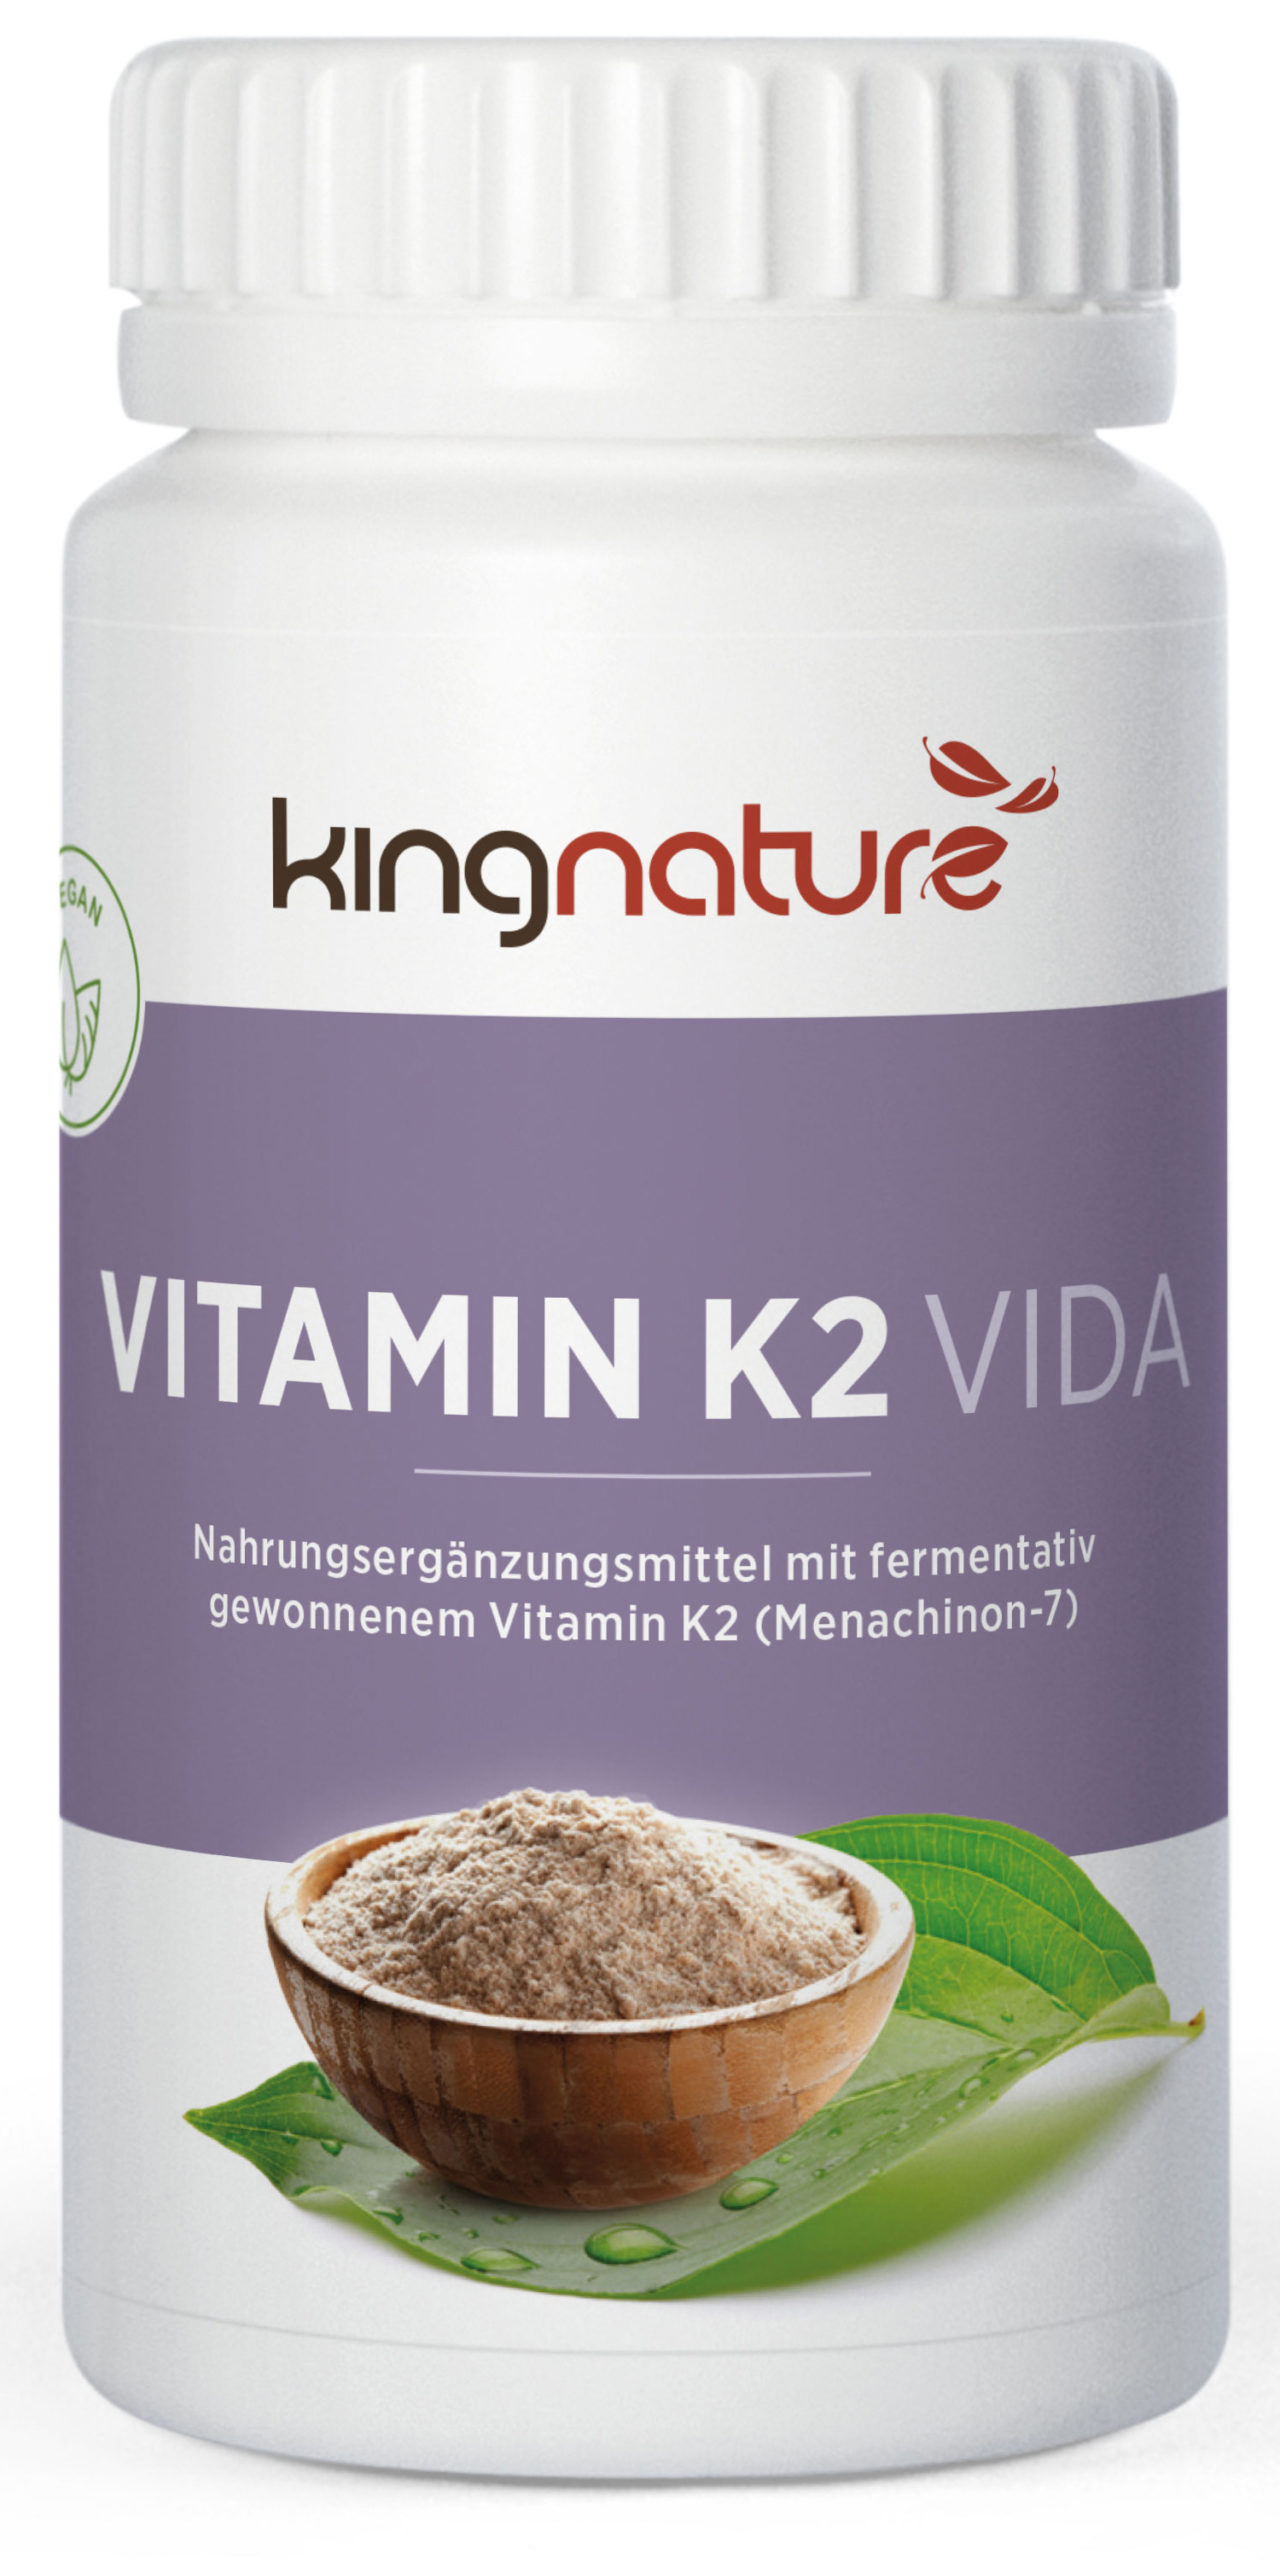 Vorschaubild: Vitamin K2 Vida – Kapseln